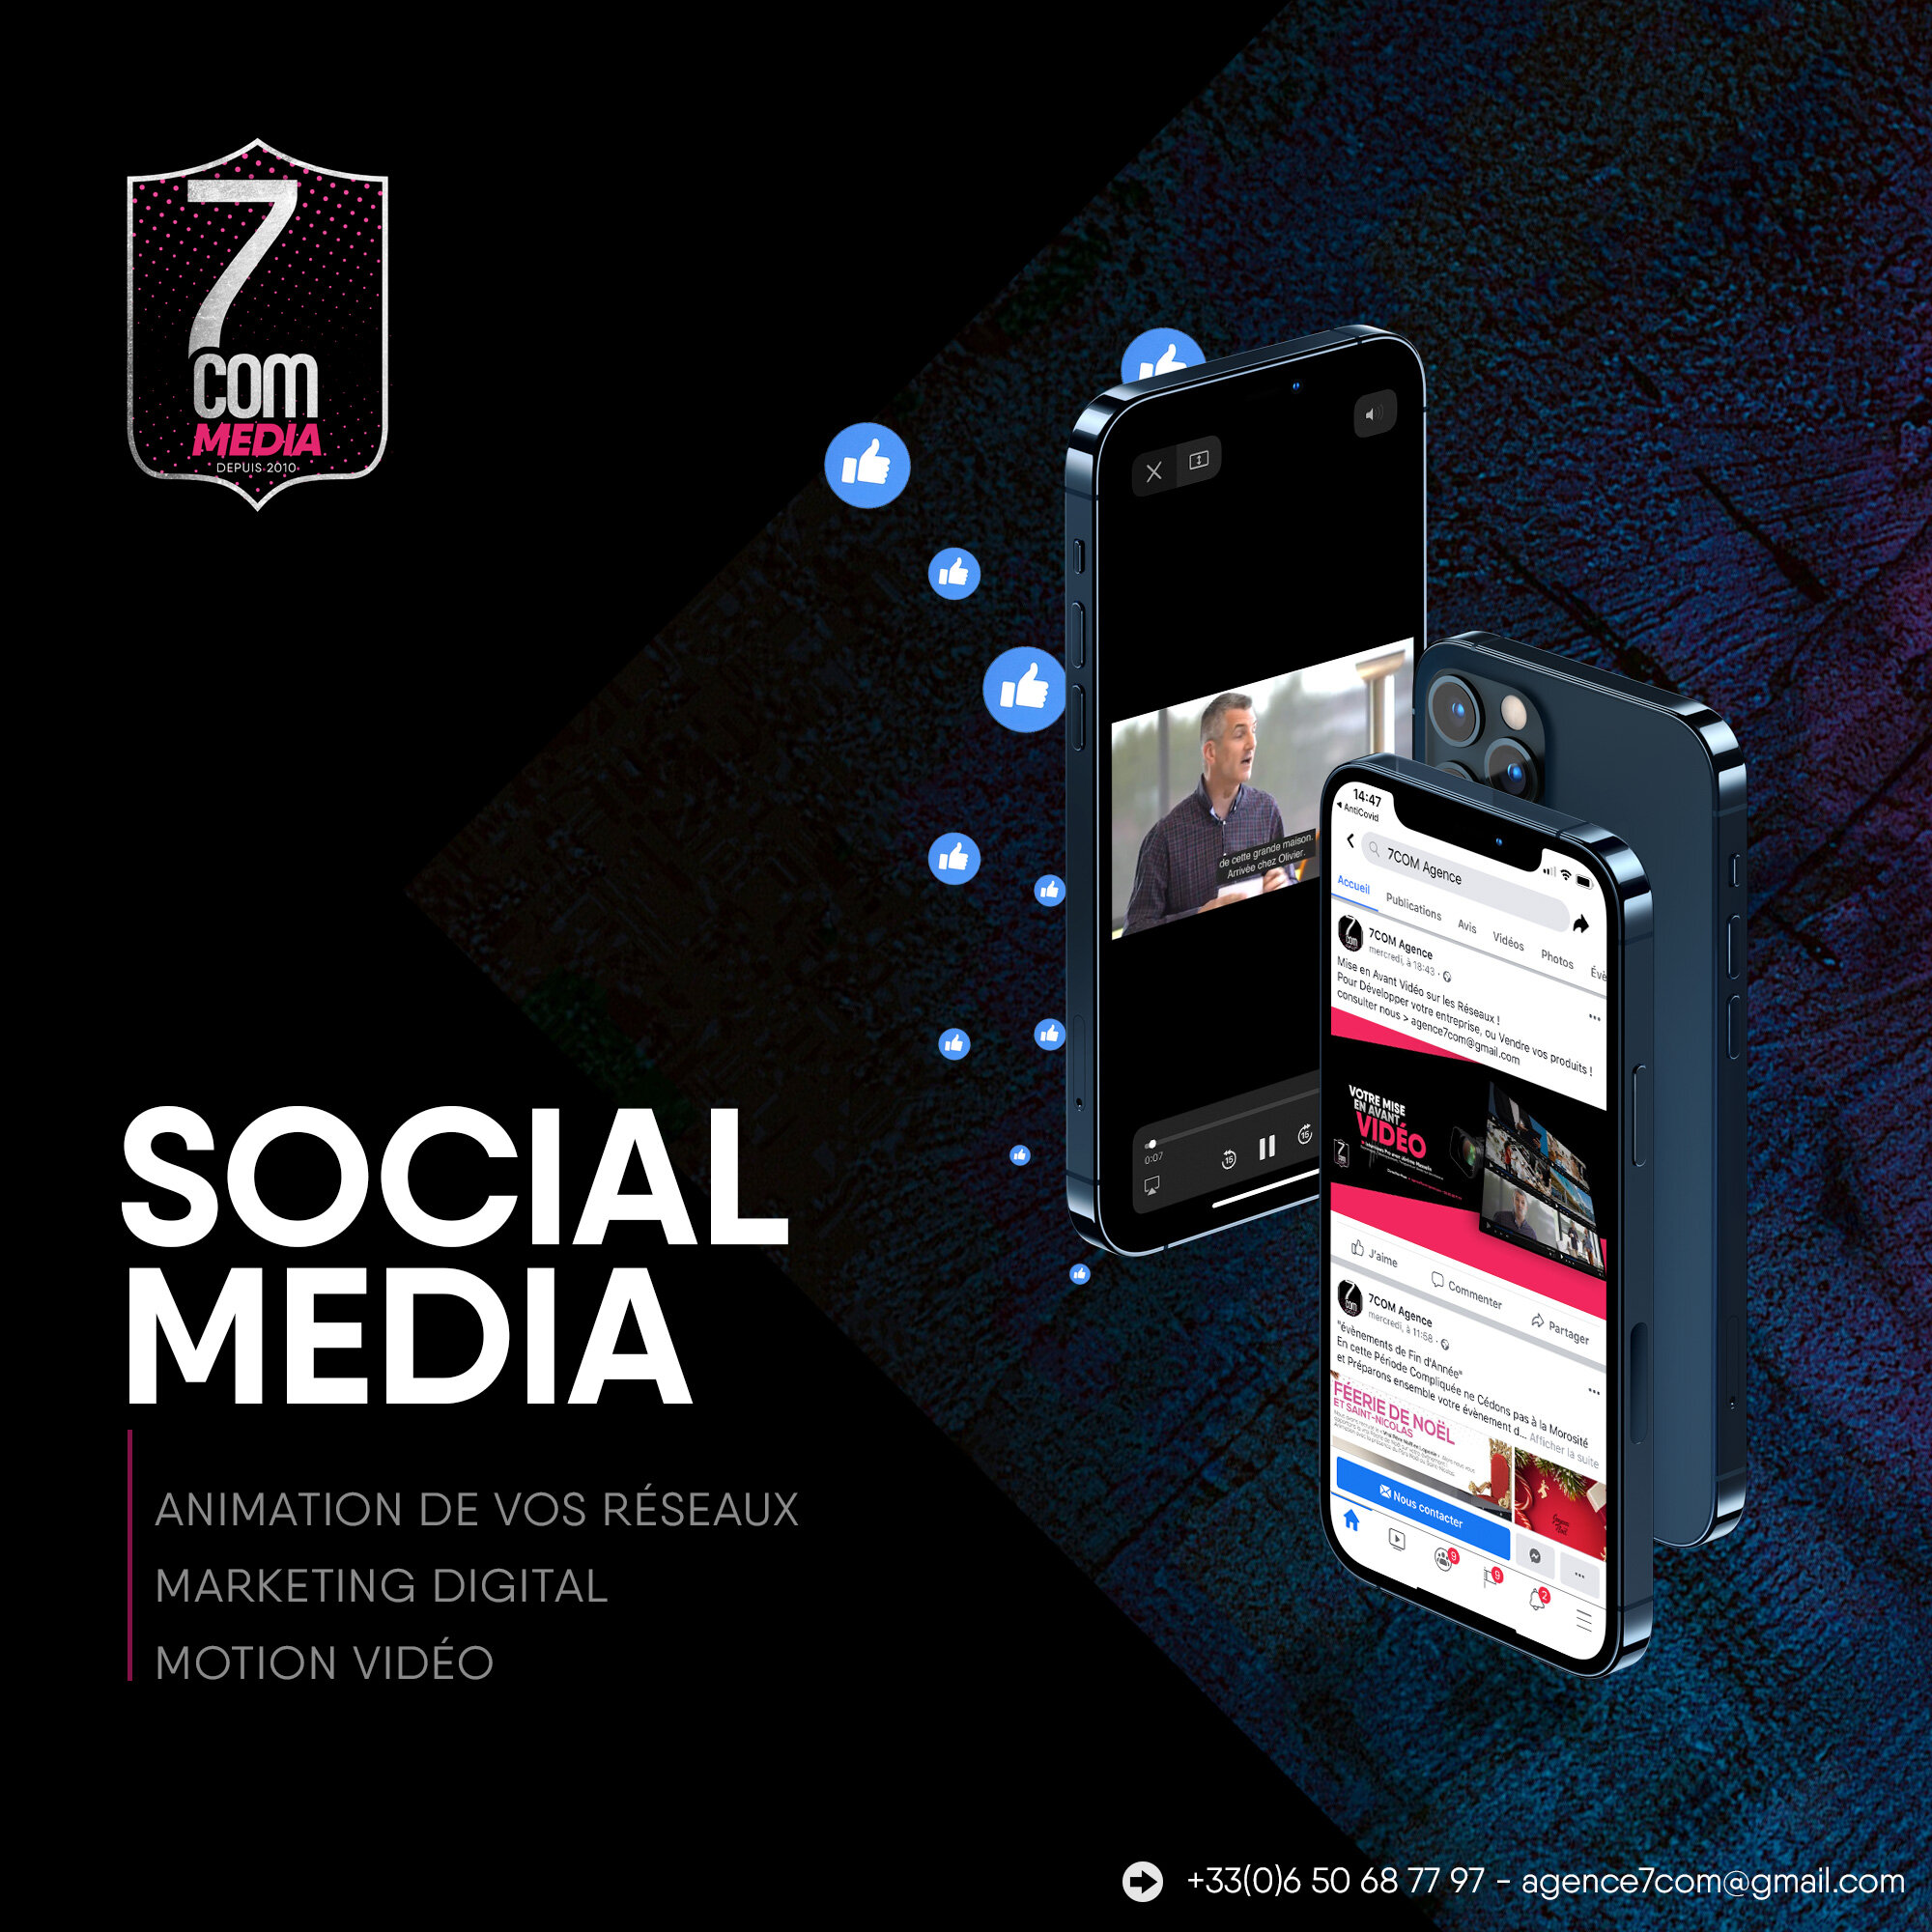 7com-social-media.jpg